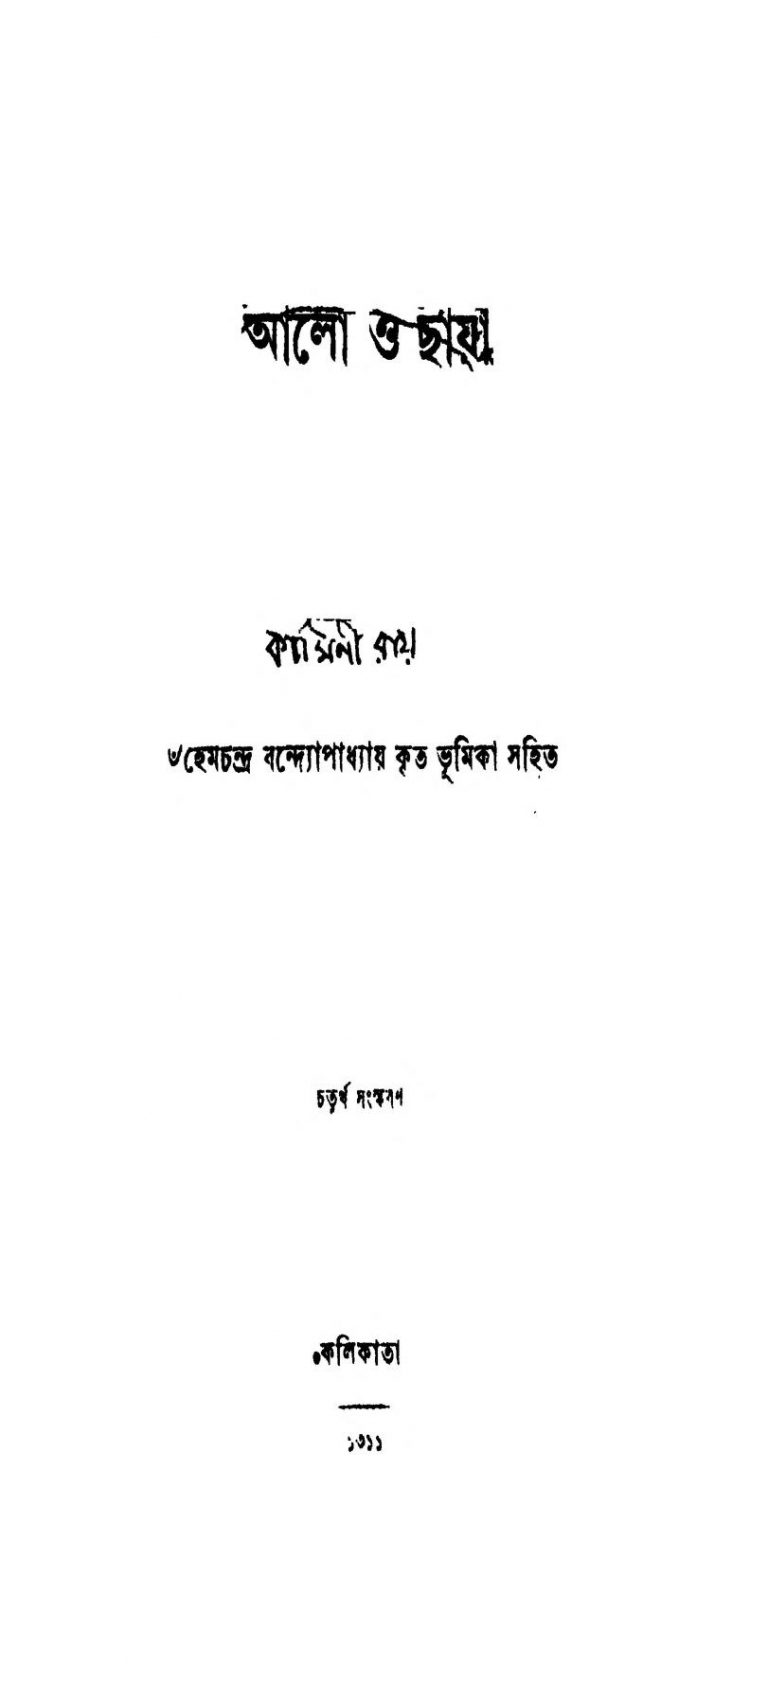 Aalo O Chhaya [Ed. 4] by Kamini Ray - কামিনী রায়